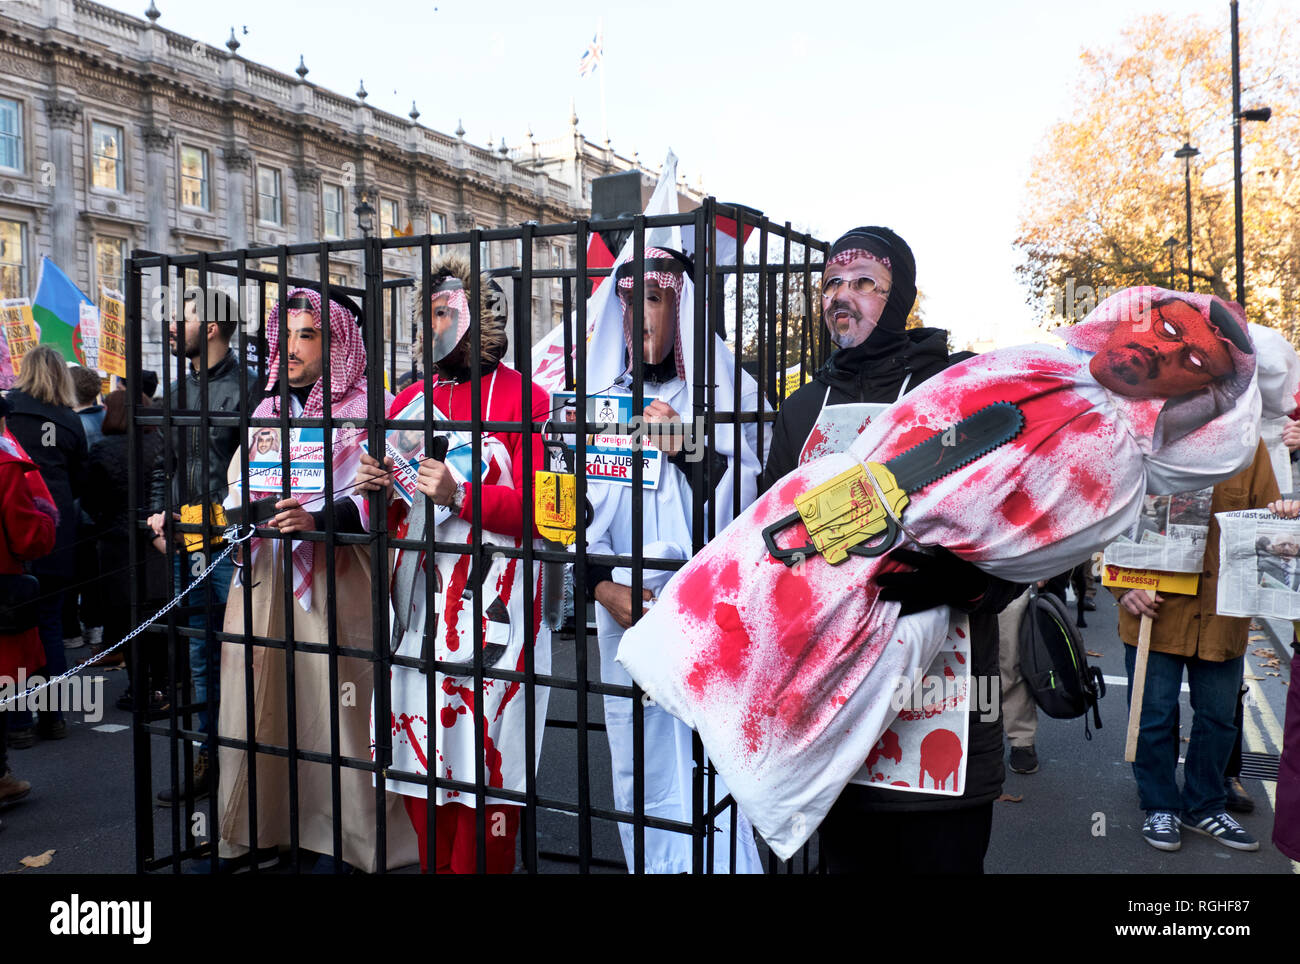 In seguito ci uccide Arabia giornalista Jamal Khashoggi in Turchia, dimostranti è venuto vestito come Arabia funzionari, comprese Saudi Crown Prince Mohammad bin Salman, all'interno di un fake cella di prigione . Foto Stock